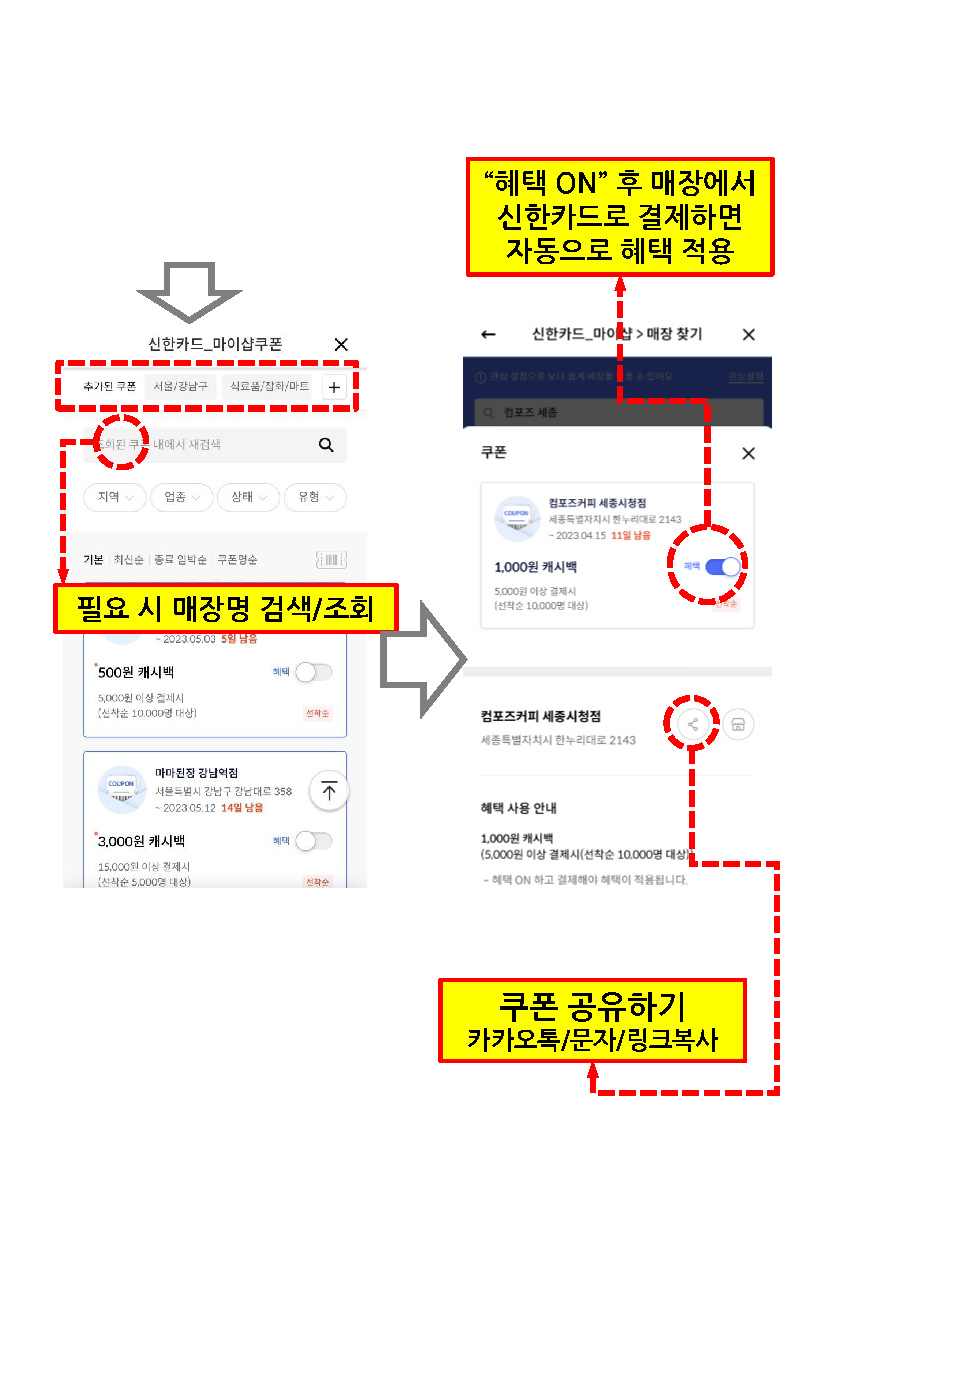 착한가격업소 관련 신한카드 행사 안내 첨부#3